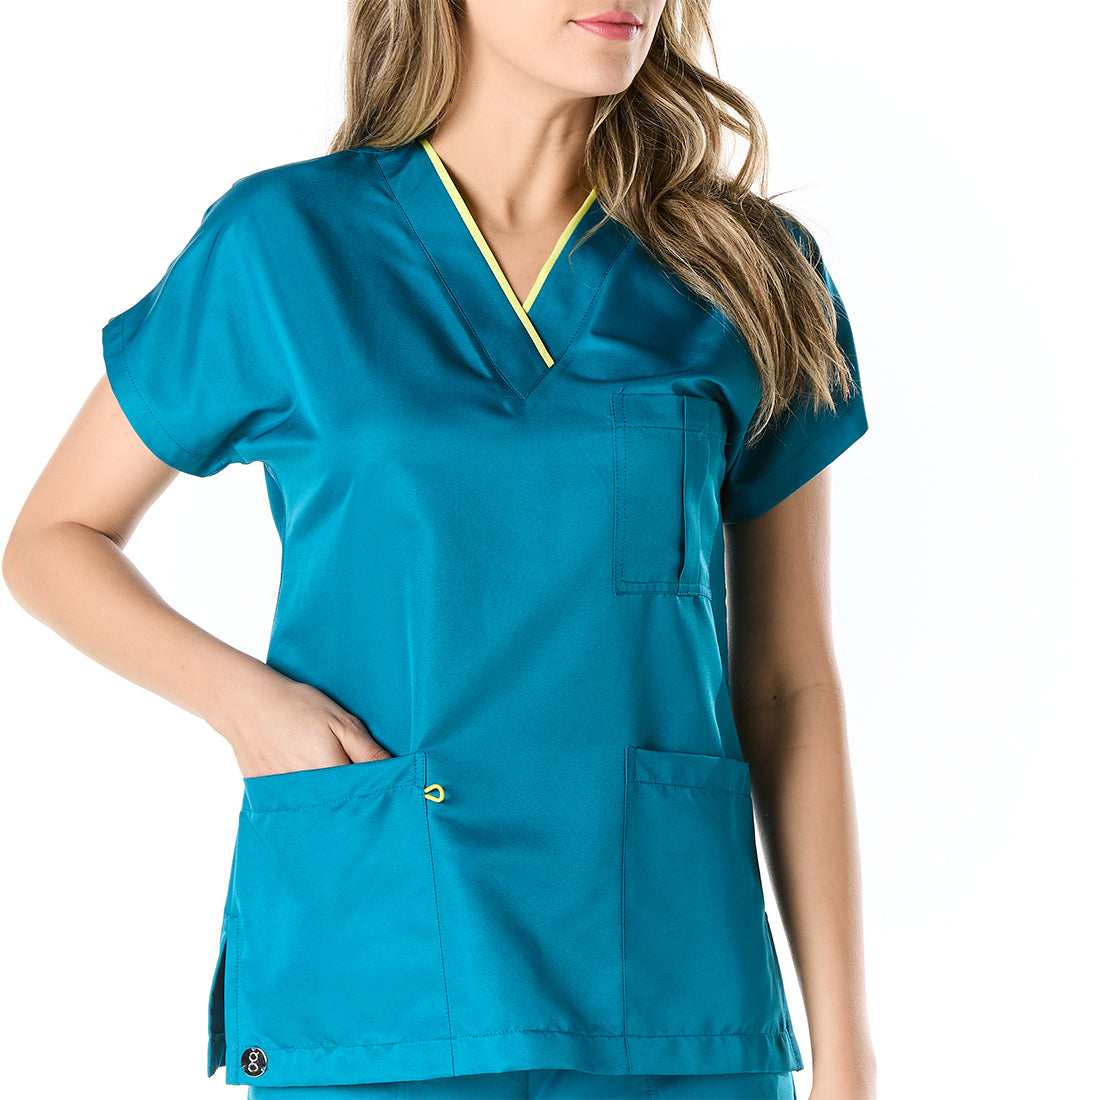 Mujer vistiendo pijama sanitario azul con escote en v y elastico portagafete